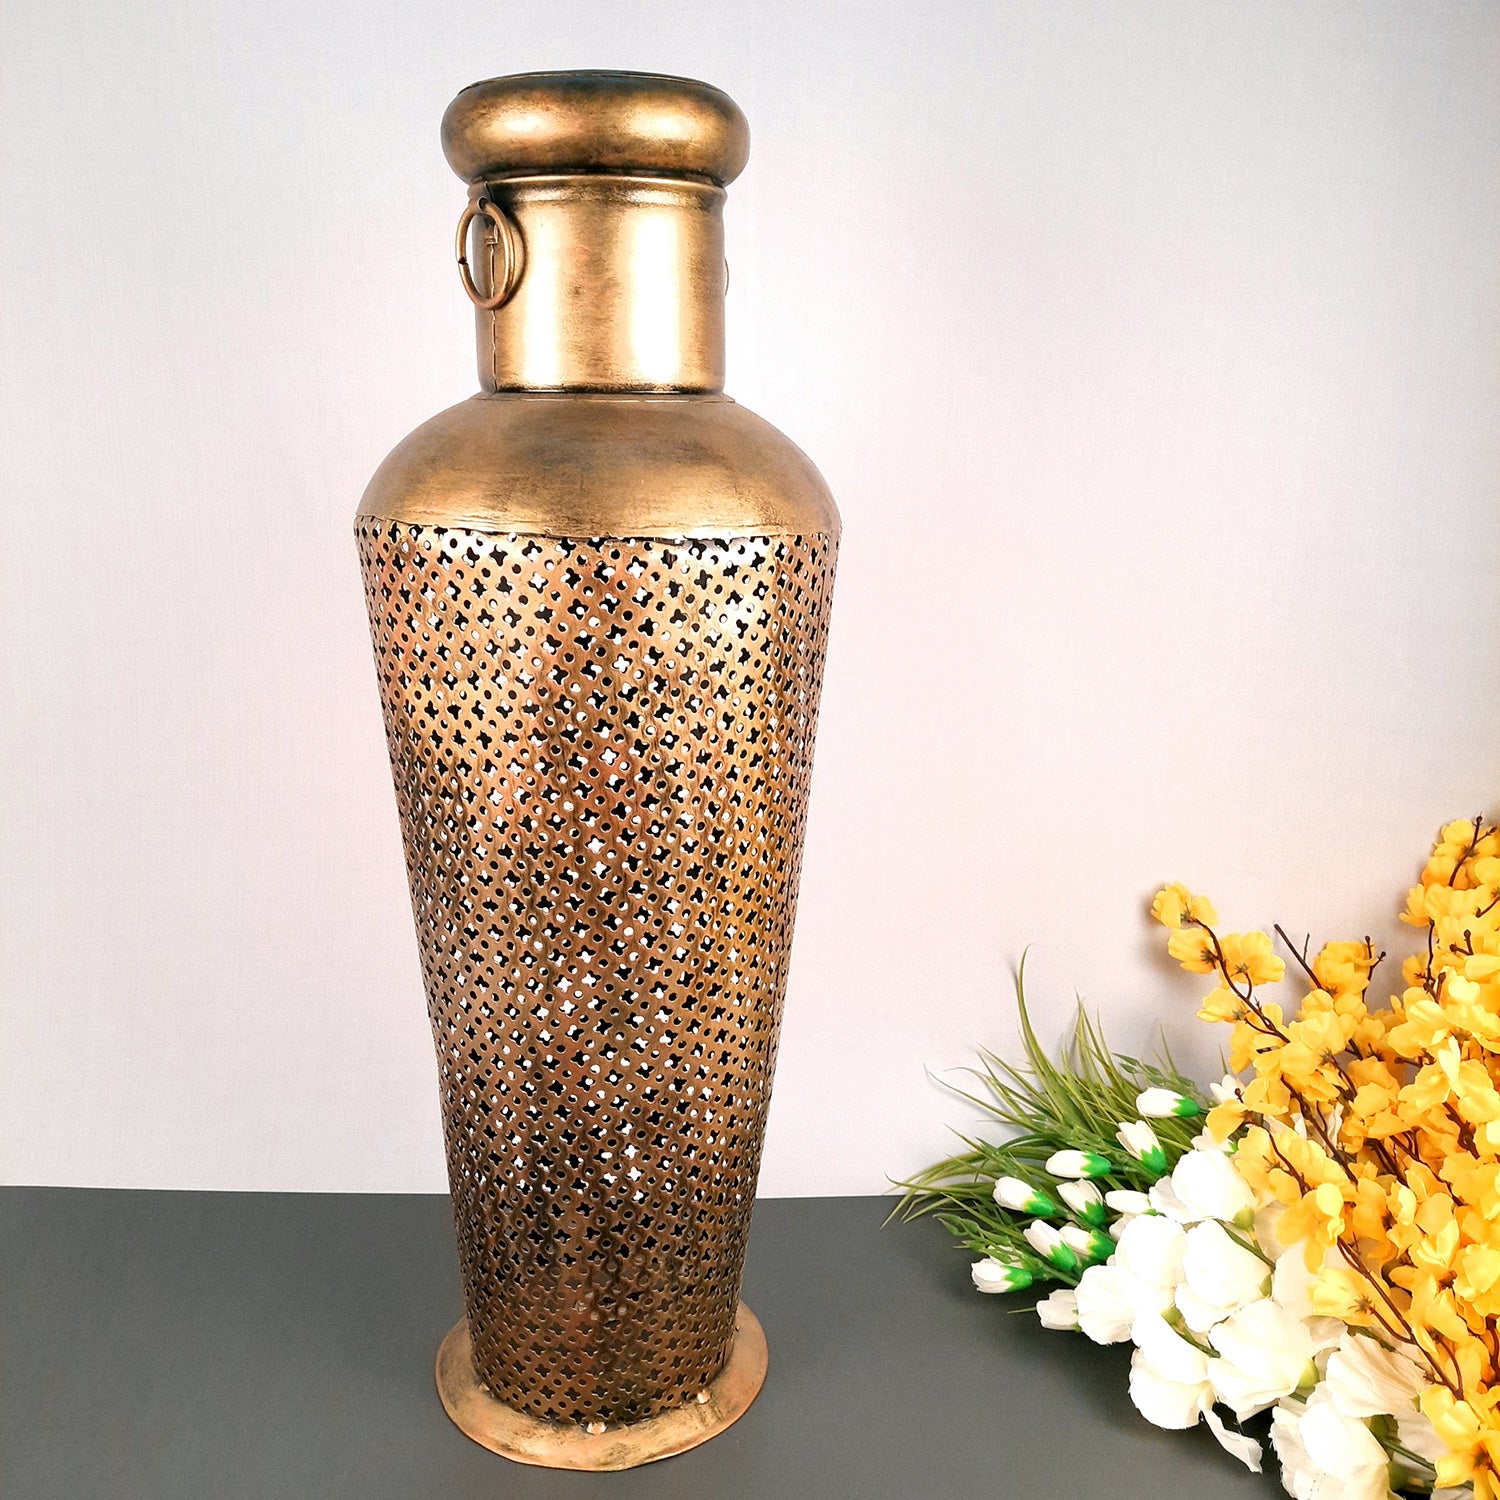 Vintage Vase With LED Light | Antique Vase Showpiece - for Living Room, Home, Corner Decor & Gift - 28 Inch - Apkamart